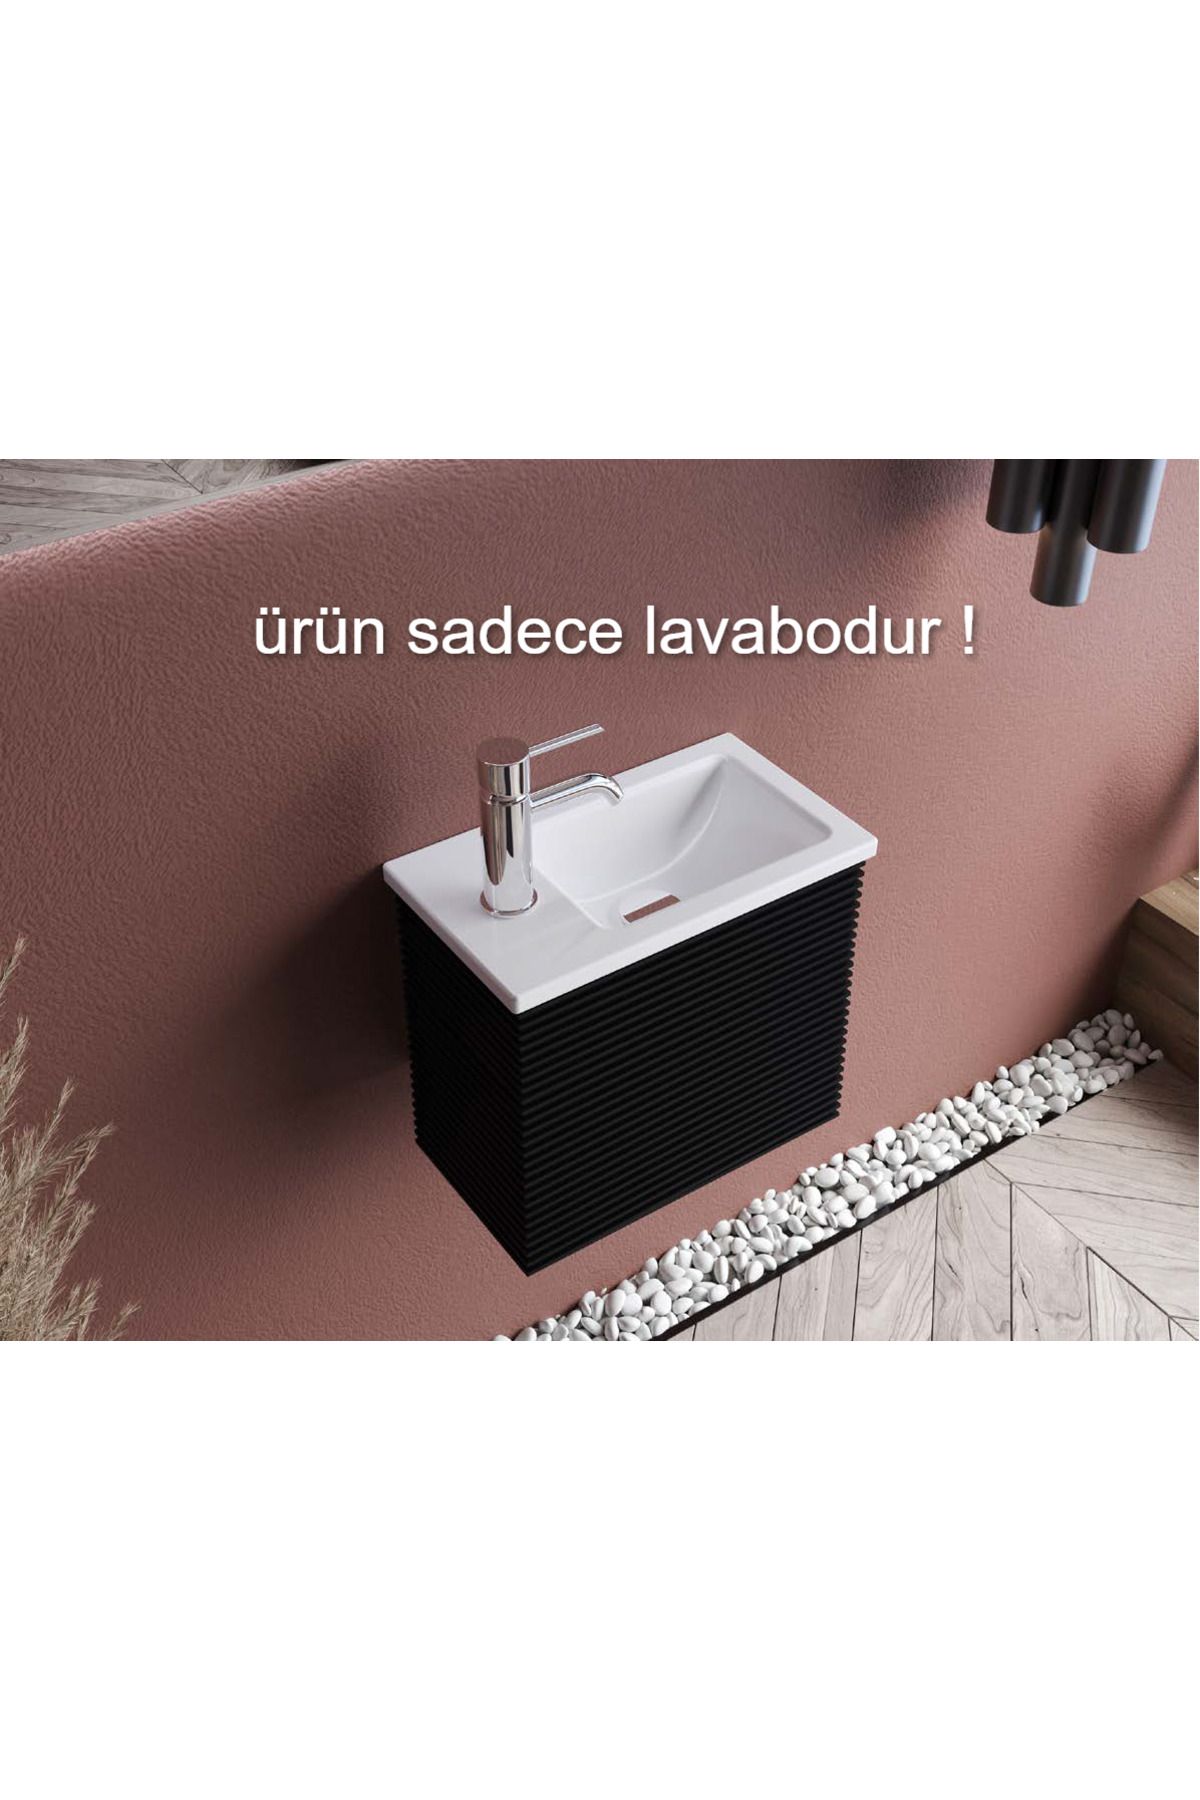 TURKUAZSERAMİK Turkuaz Cerastyle Mini Küçük Banyo, Tuvalet, Karavan Lavabo 24*42 Cm